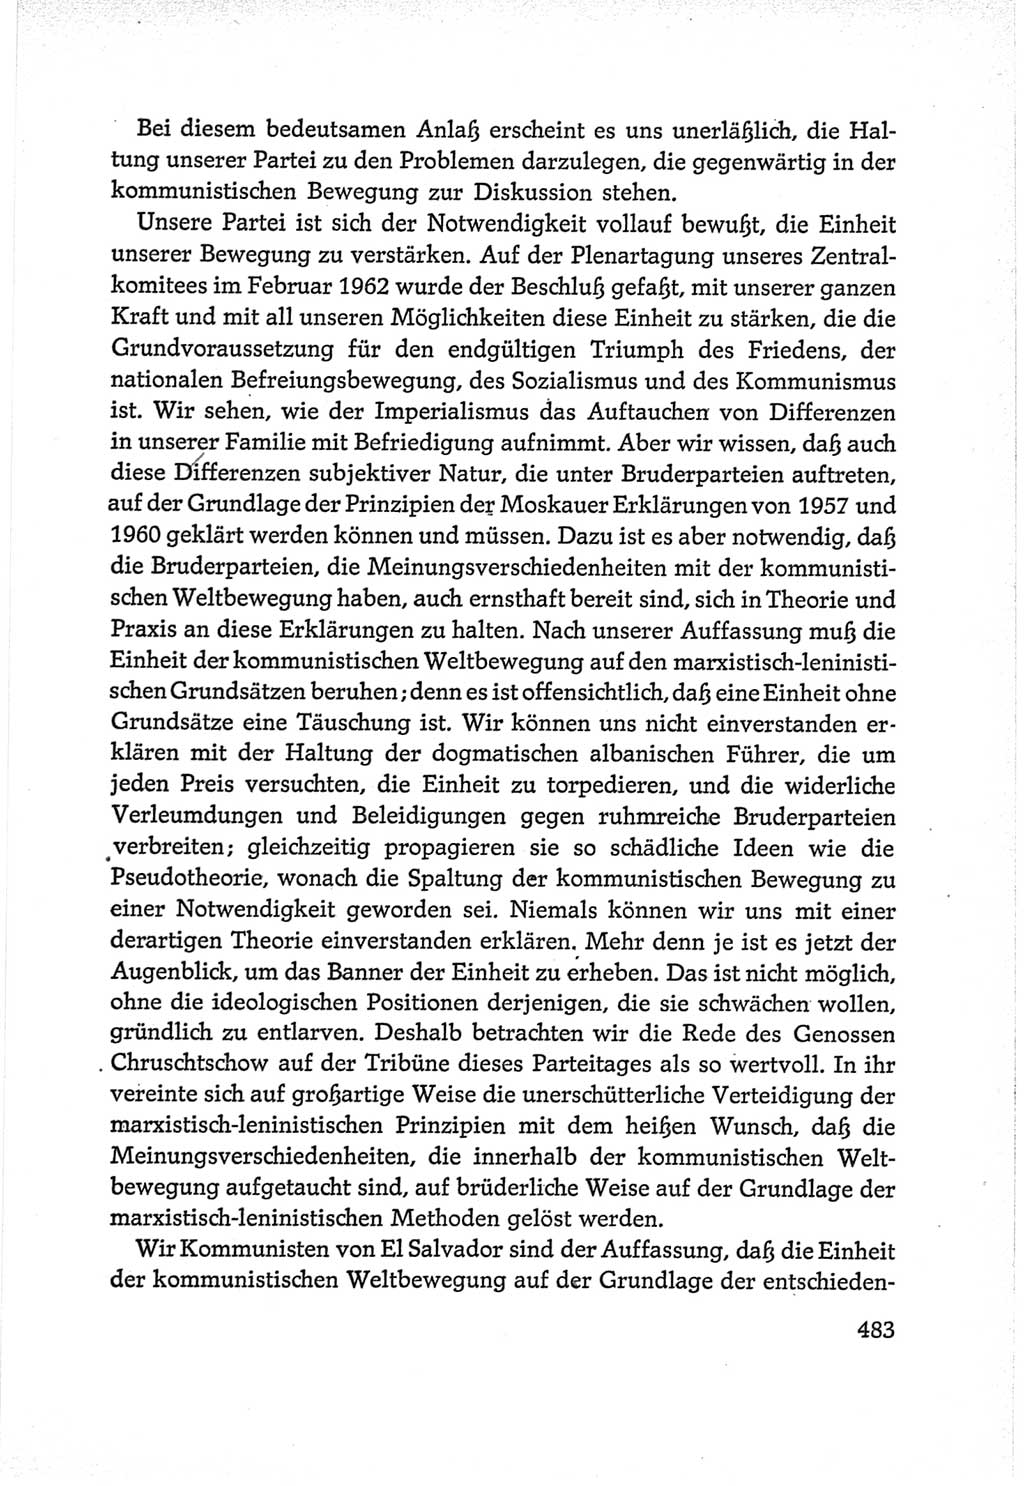 Protokoll der Verhandlungen des Ⅵ. Parteitages der Sozialistischen Einheitspartei Deutschlands (SED) [Deutsche Demokratische Republik (DDR)] 1963, Band Ⅱ, Seite 483 (Prot. Verh. Ⅵ. PT SED DDR 1963, Bd. Ⅱ, S. 483)